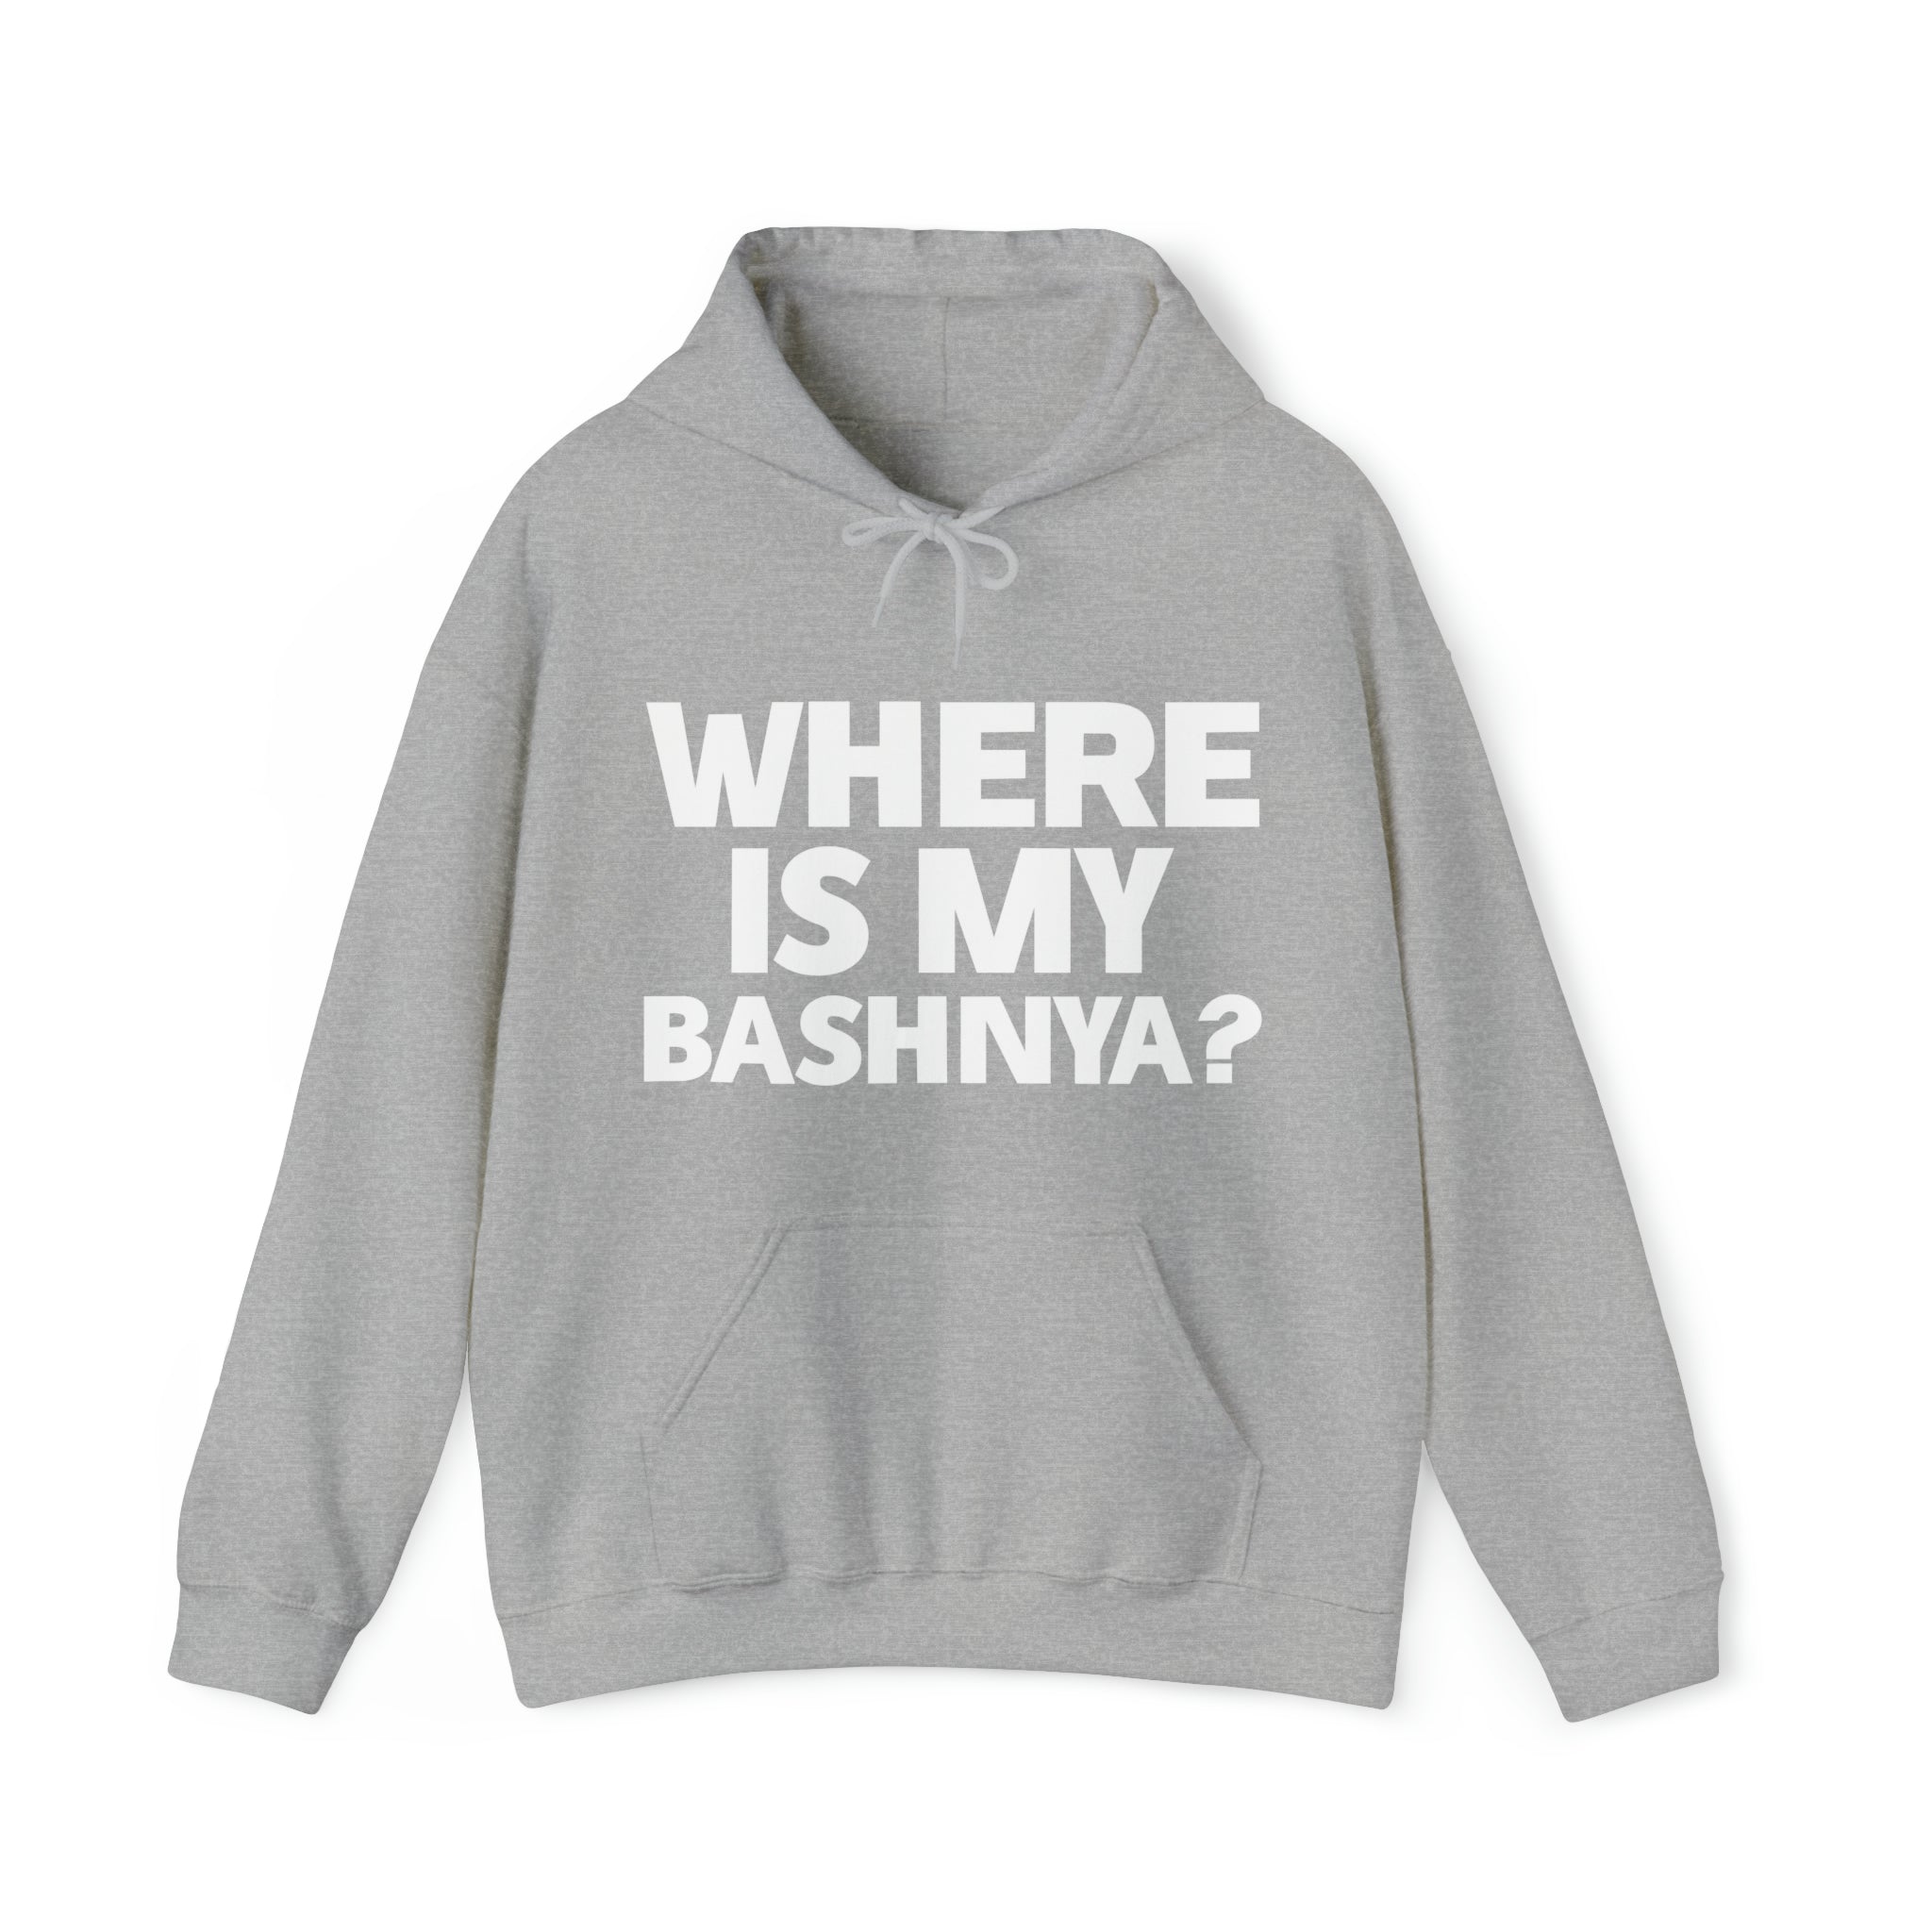 Where is My Bashnya? Sweatshirt